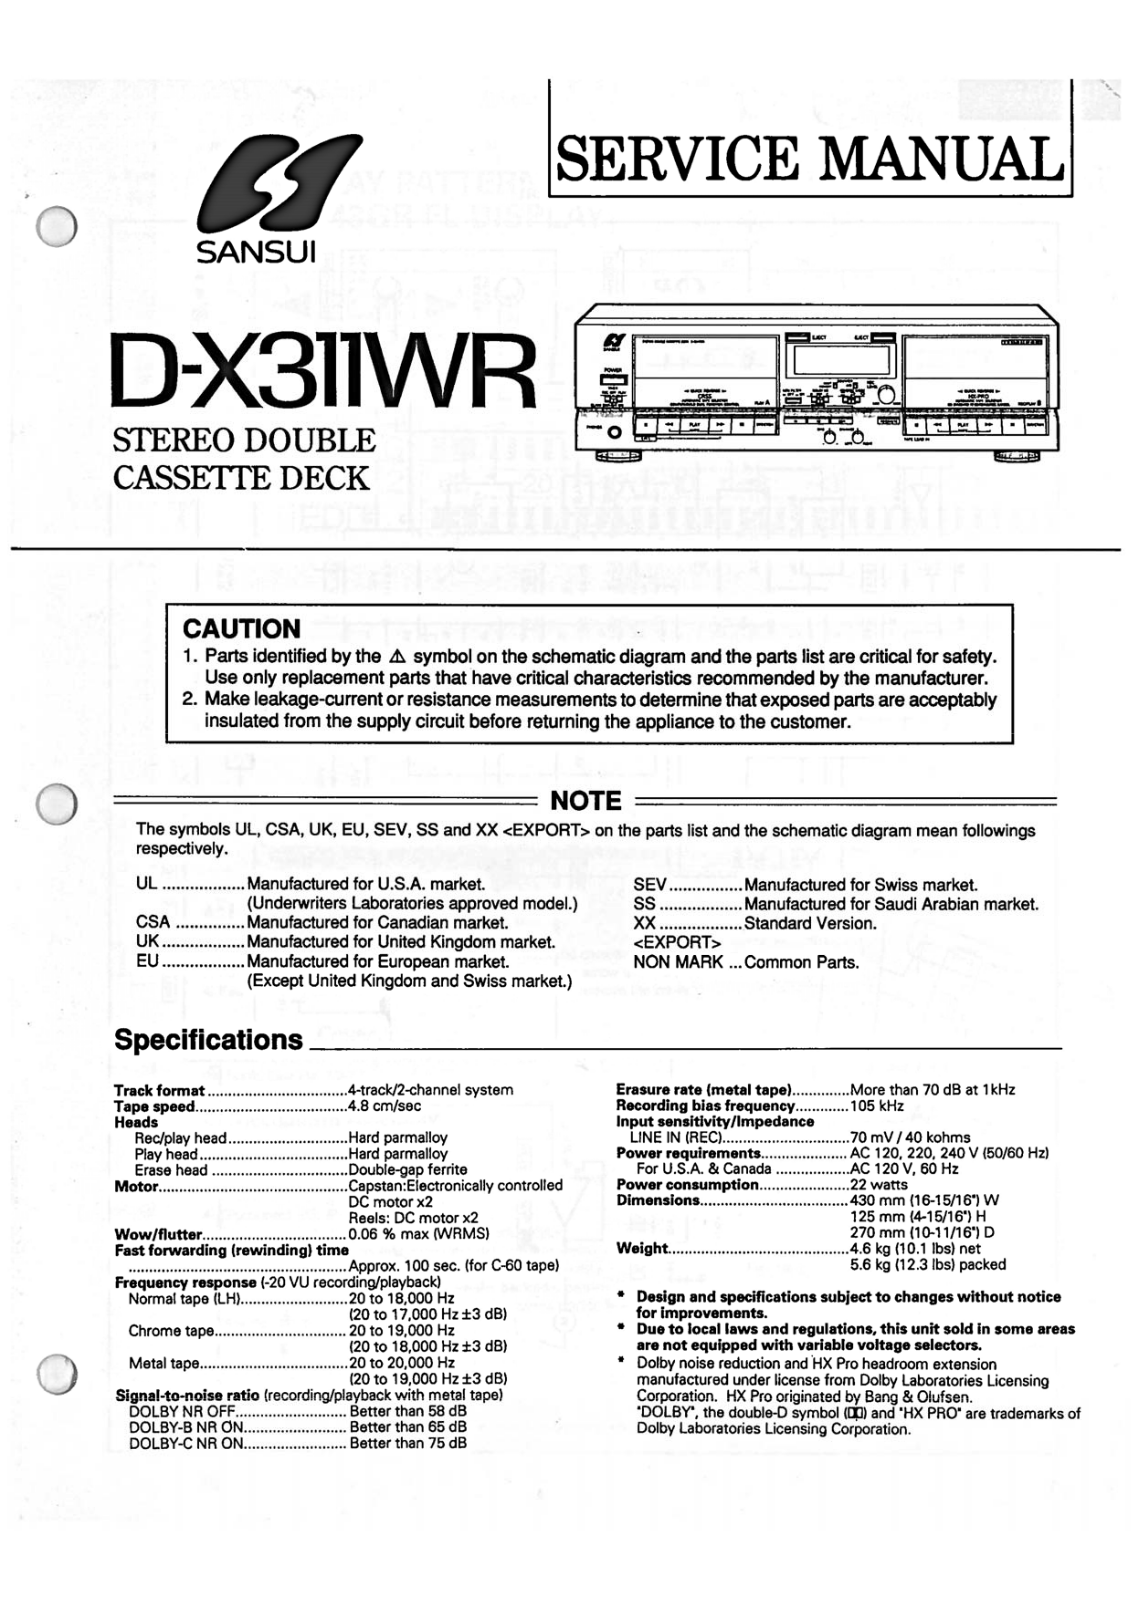 Sansui D-X311-WR Service Manual